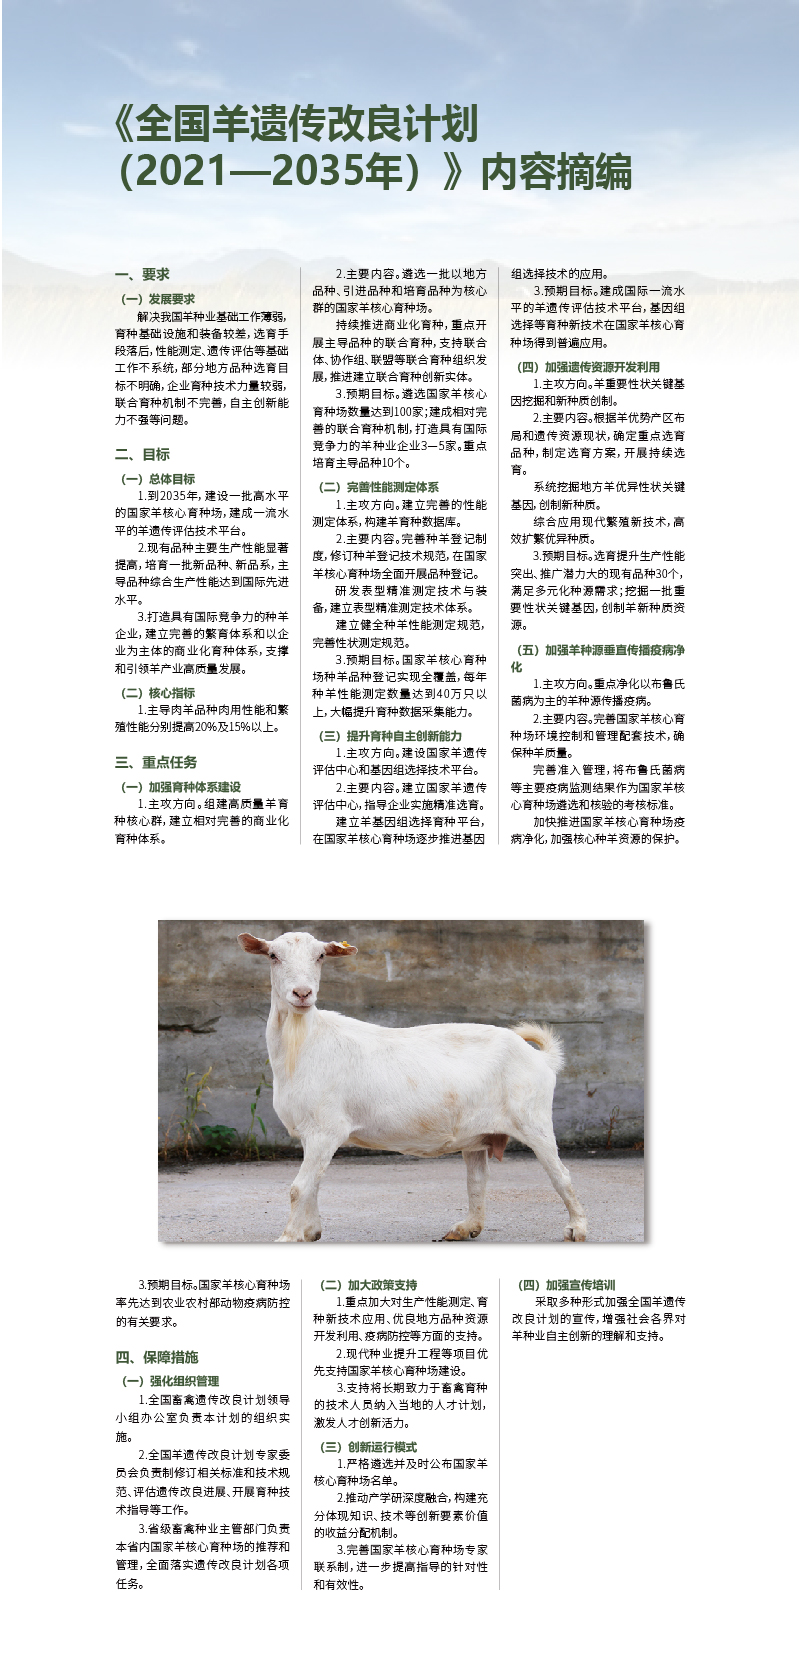 《全国羊遗传改良计划 （2021—2035年）》内容摘编